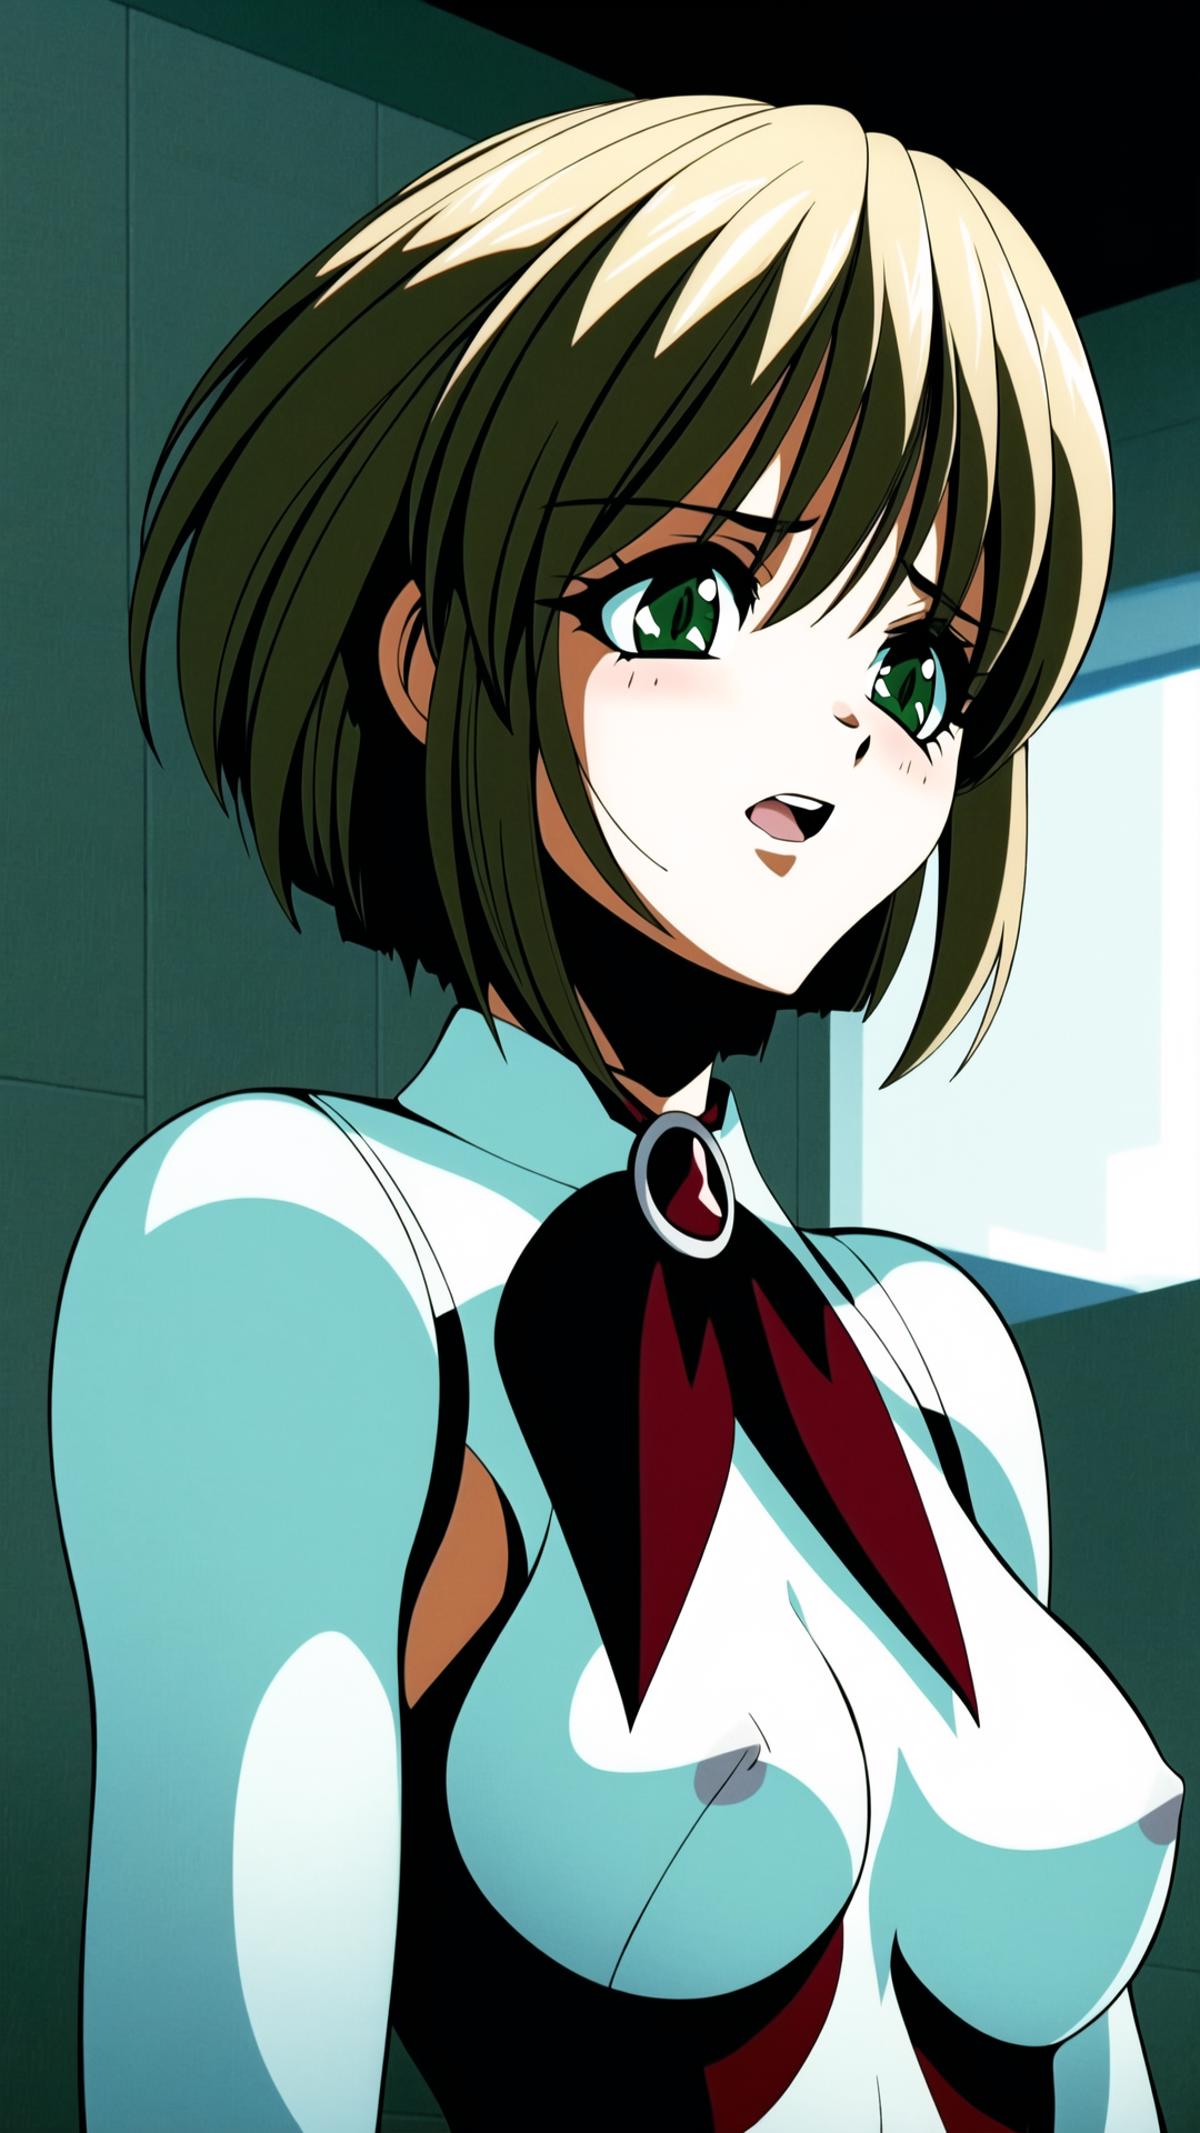 Rachel (Ai Doll OVA) image by ej20gf8453